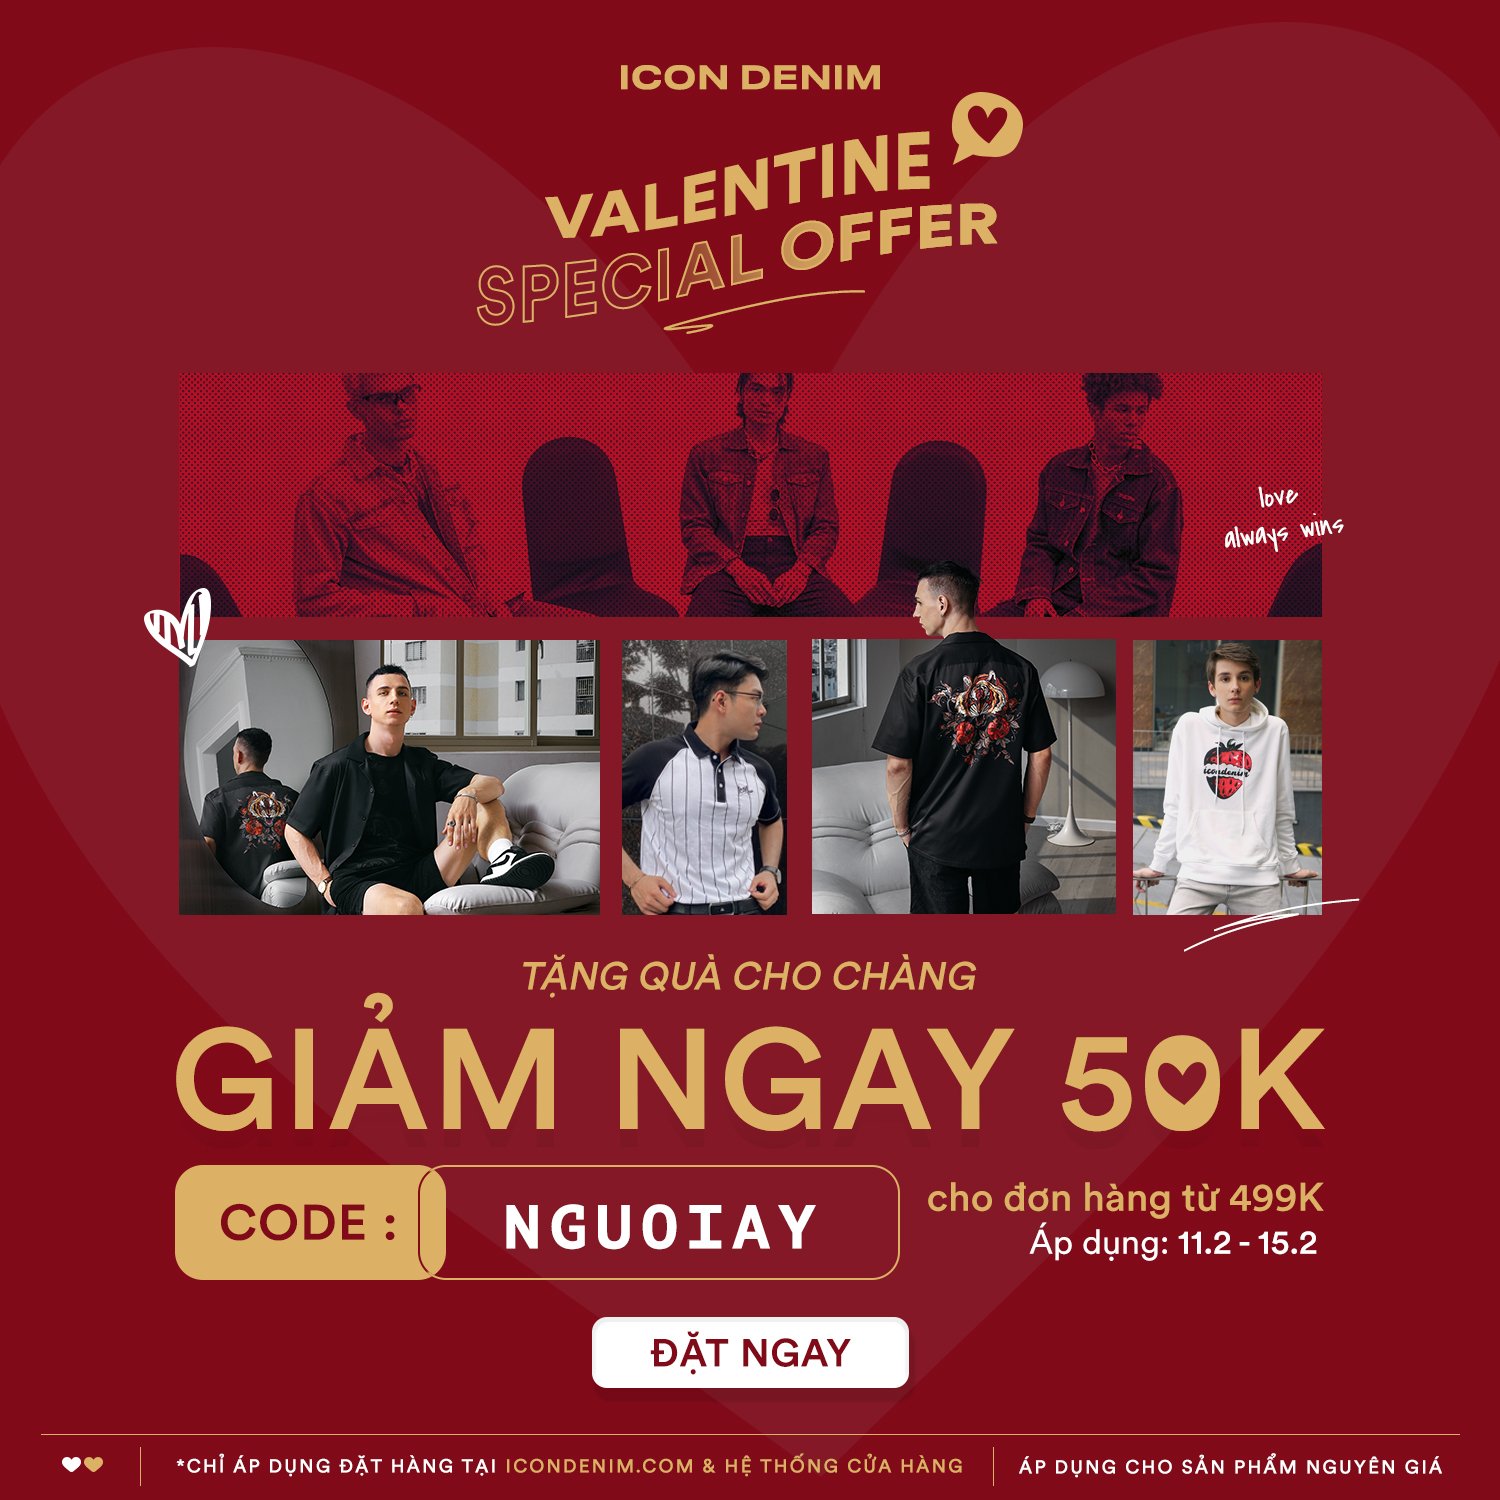 NHẬN ƯU ĐÃI 50K ĐƠN 499K - Sắm Ngay Quà Valentine Cho Chàng!